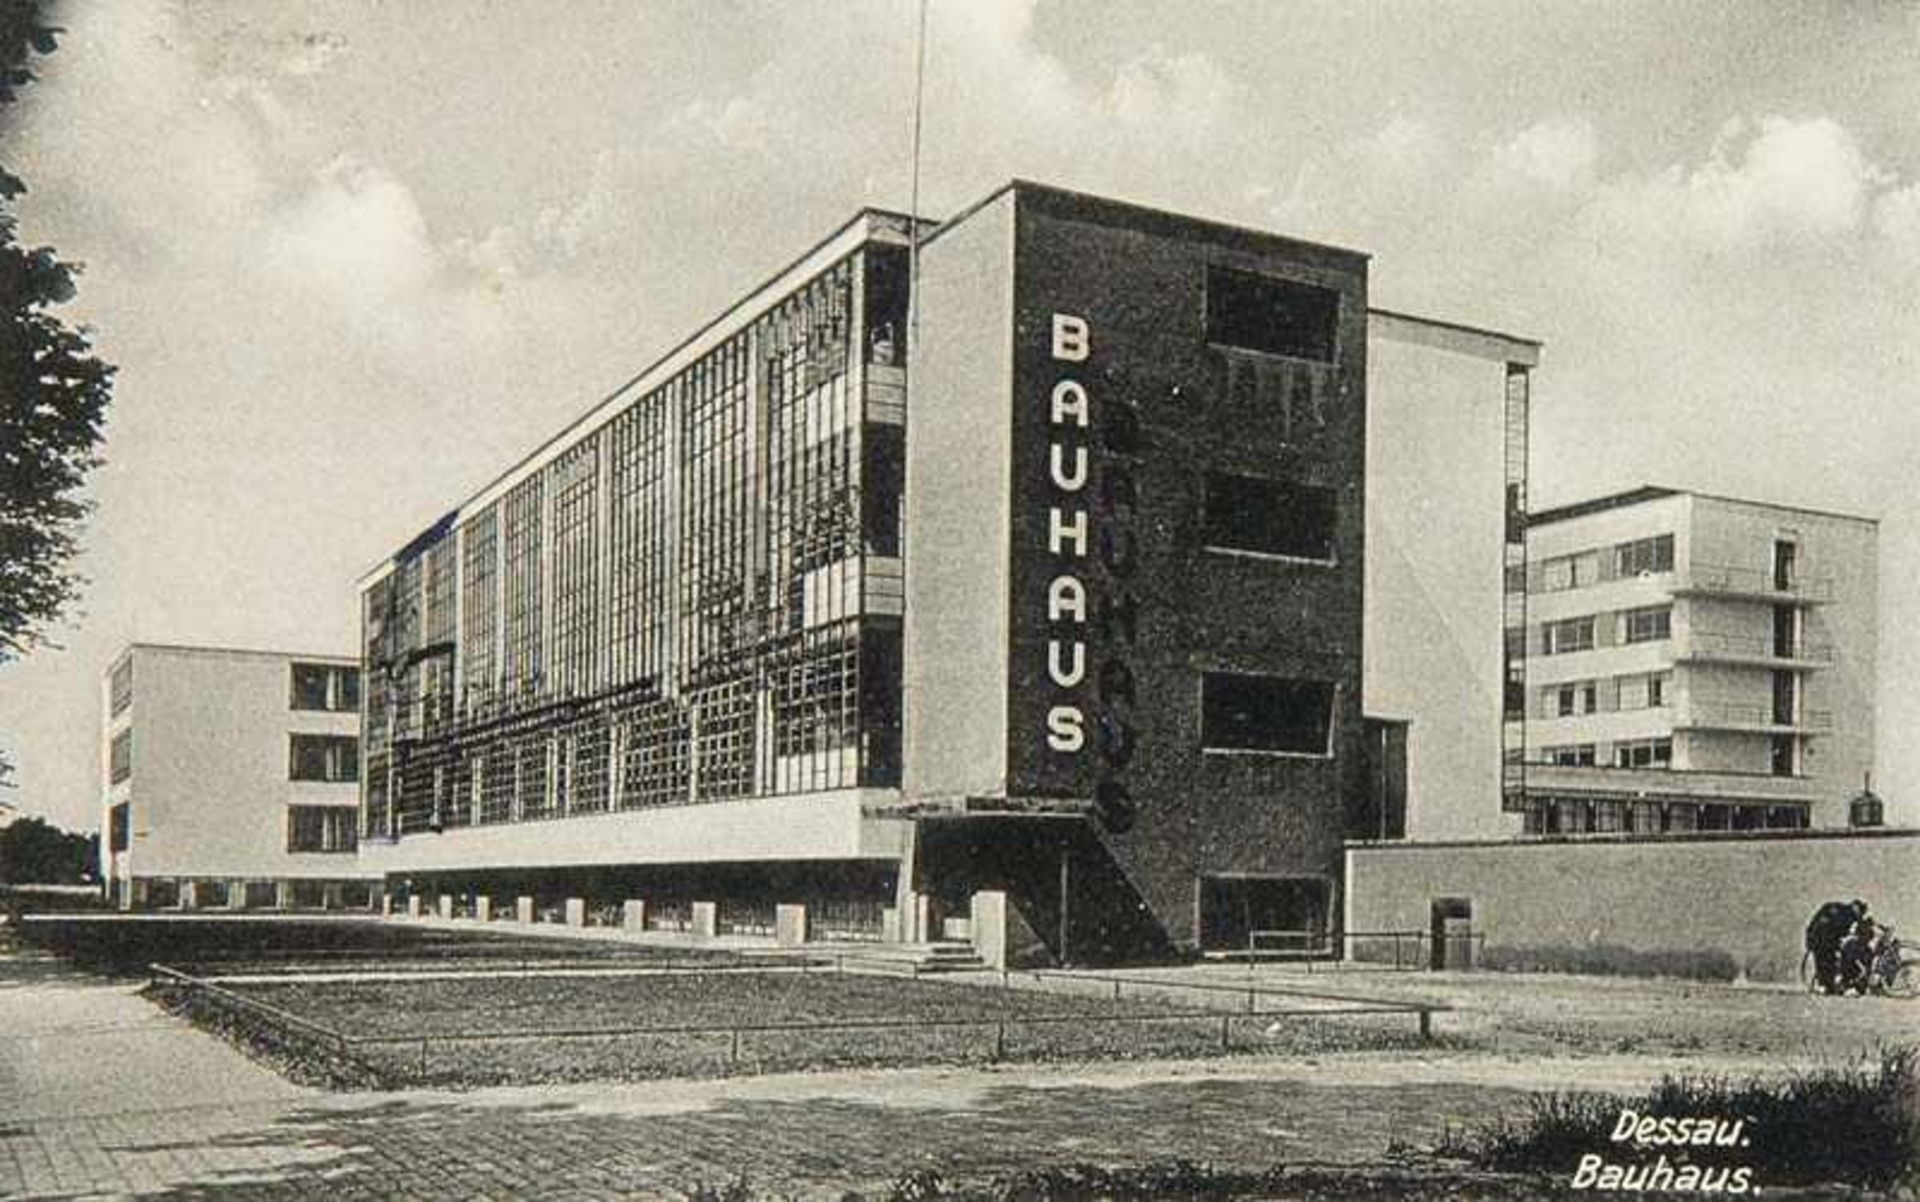 Bauhaus - - Sammlung von 10 OPostkarten sowie 3 OPhotopostkarten vom Bauhaus Dessau und dem